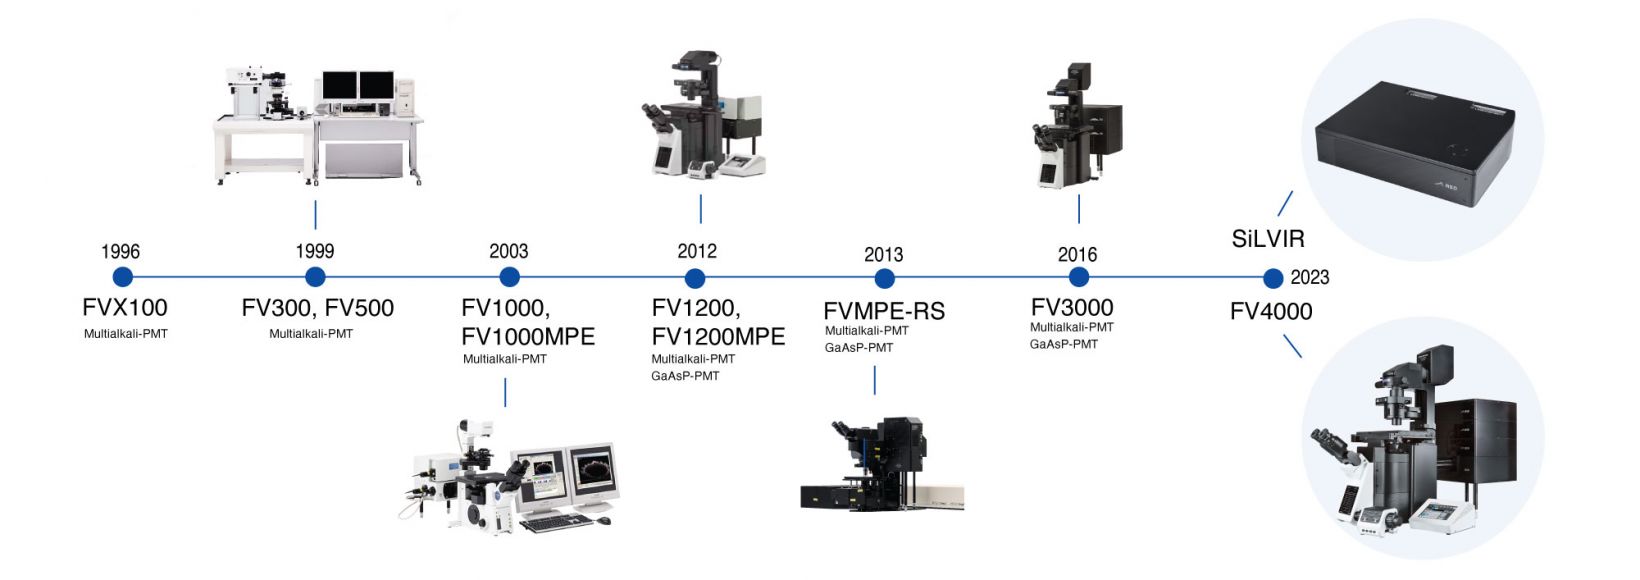 首先在奥林巴斯，然后在Evident，最终在FV4000激光共焦显微镜上实现共焦显微镜发展的纪年表。